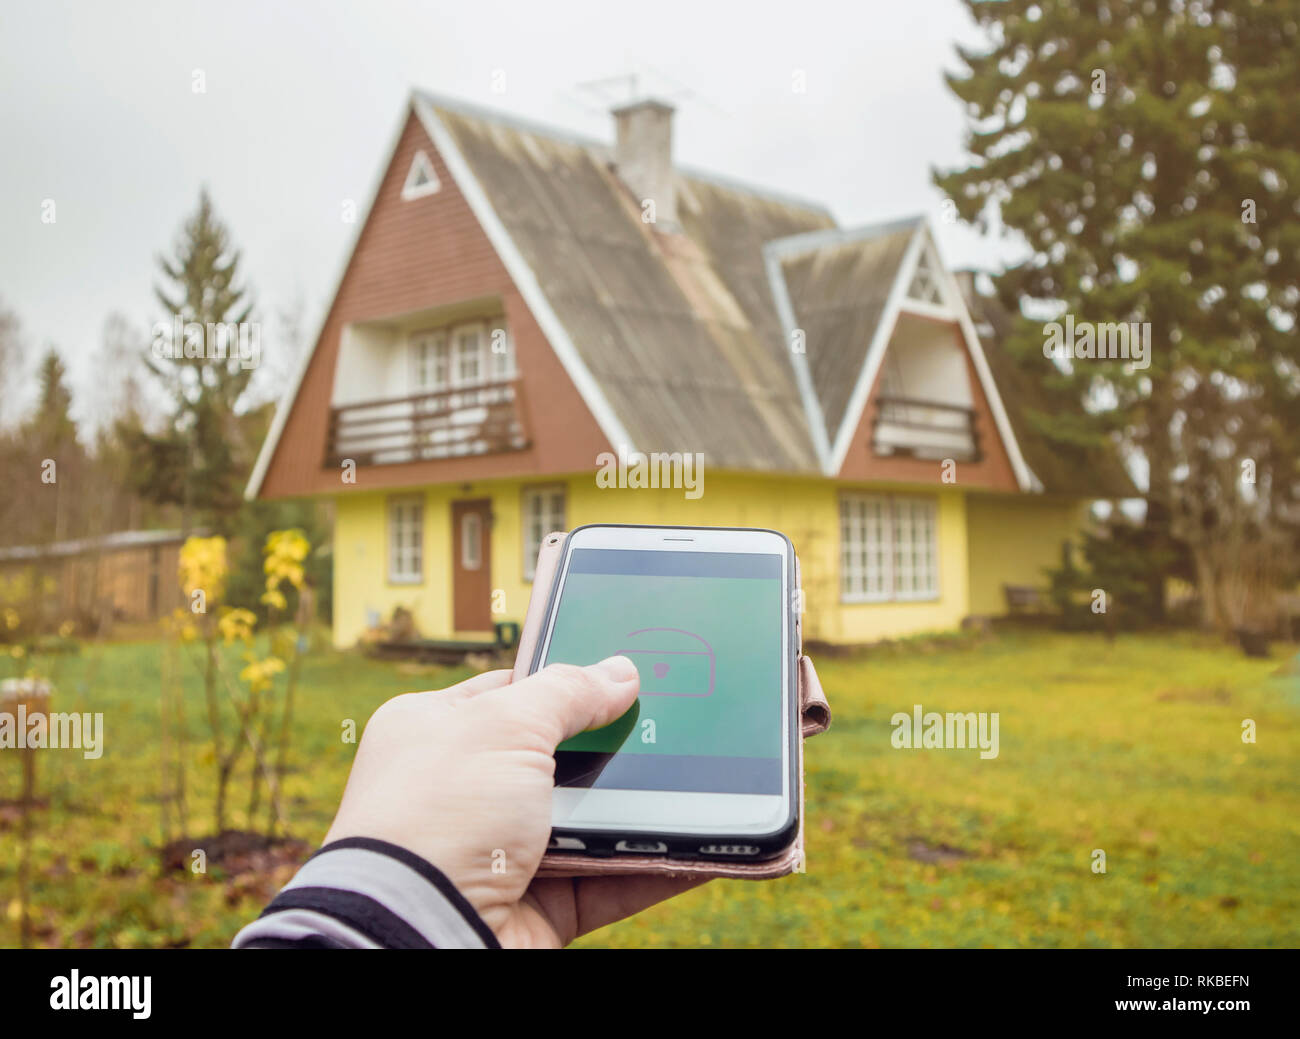 Person Hand Drücken Sie die Verriegelungs-/Entriegelungstaste aus der Distanz auf dem Smartphone App zum Öffnen/Schließen der ländlichen Home Haus Tür. Moderner Lifestyle Technologie Konzept. Stockfoto